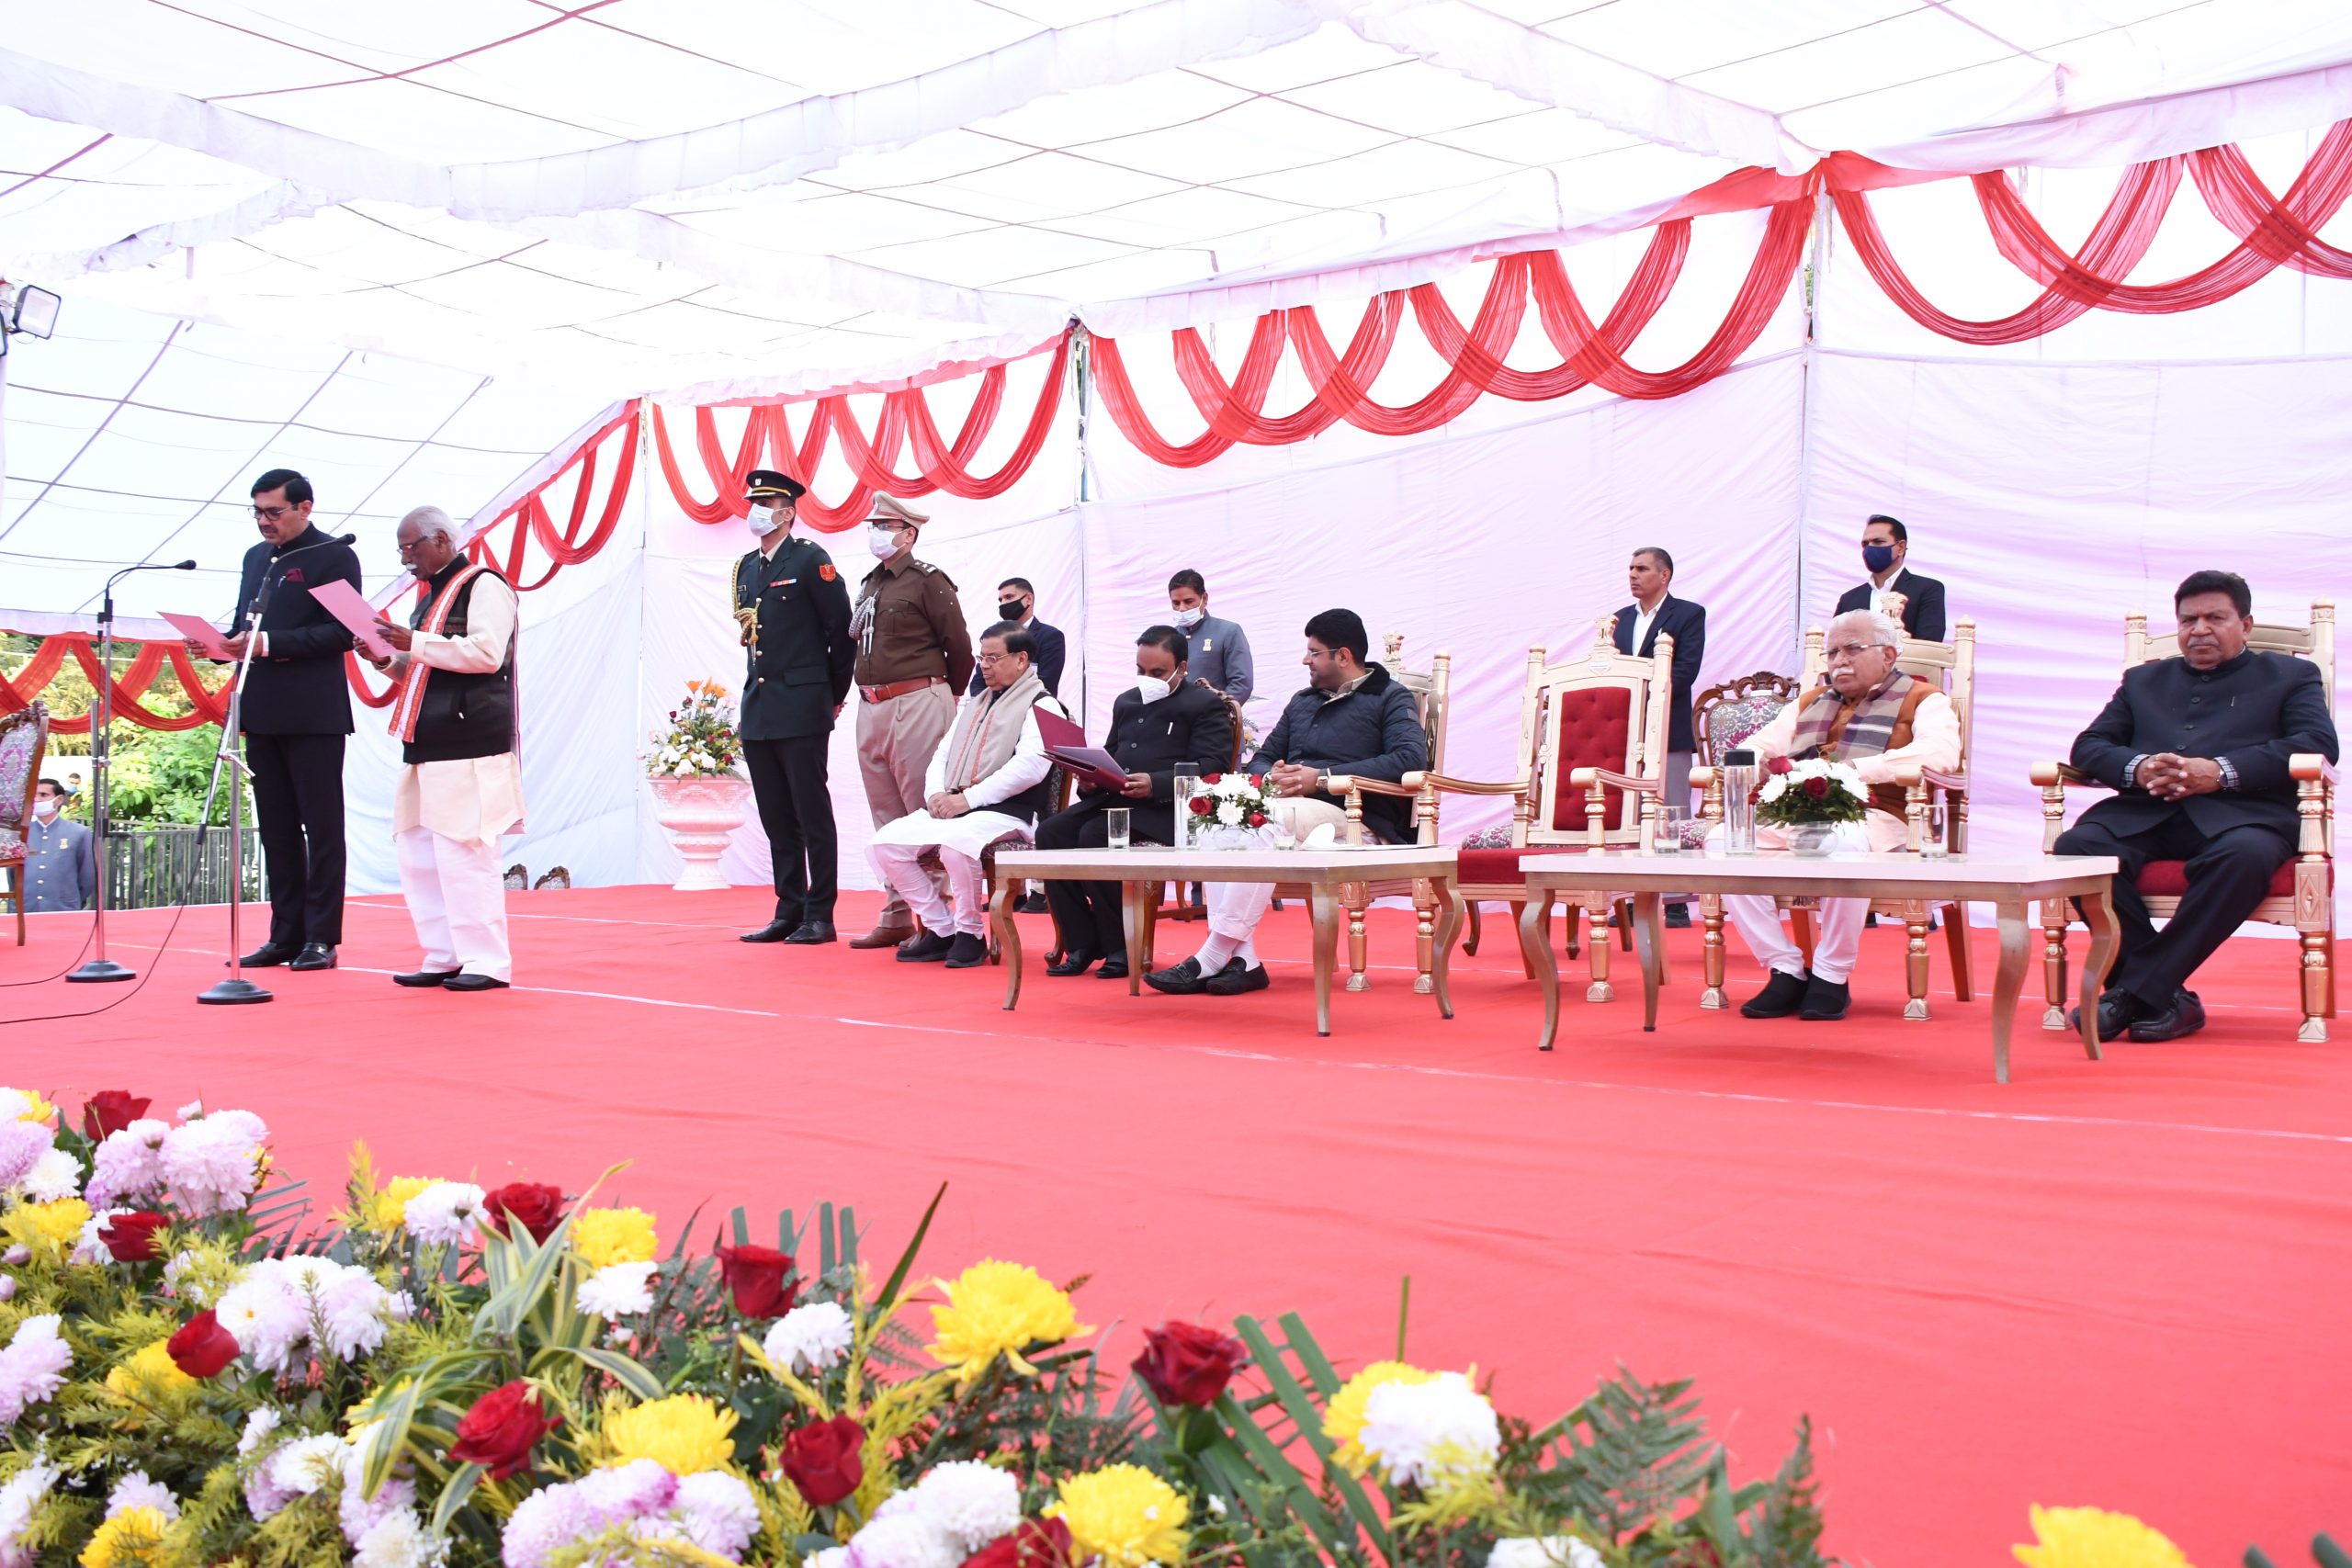 राज्यपाल श्री बंडारू दत्तात्रेय मंगलवार को हरियाणा राजभवन में आयोजित शपथ समारोह में श्री देवेंद्र सिंह बबली को मंत्री पद की शपथ दिलाते हुए